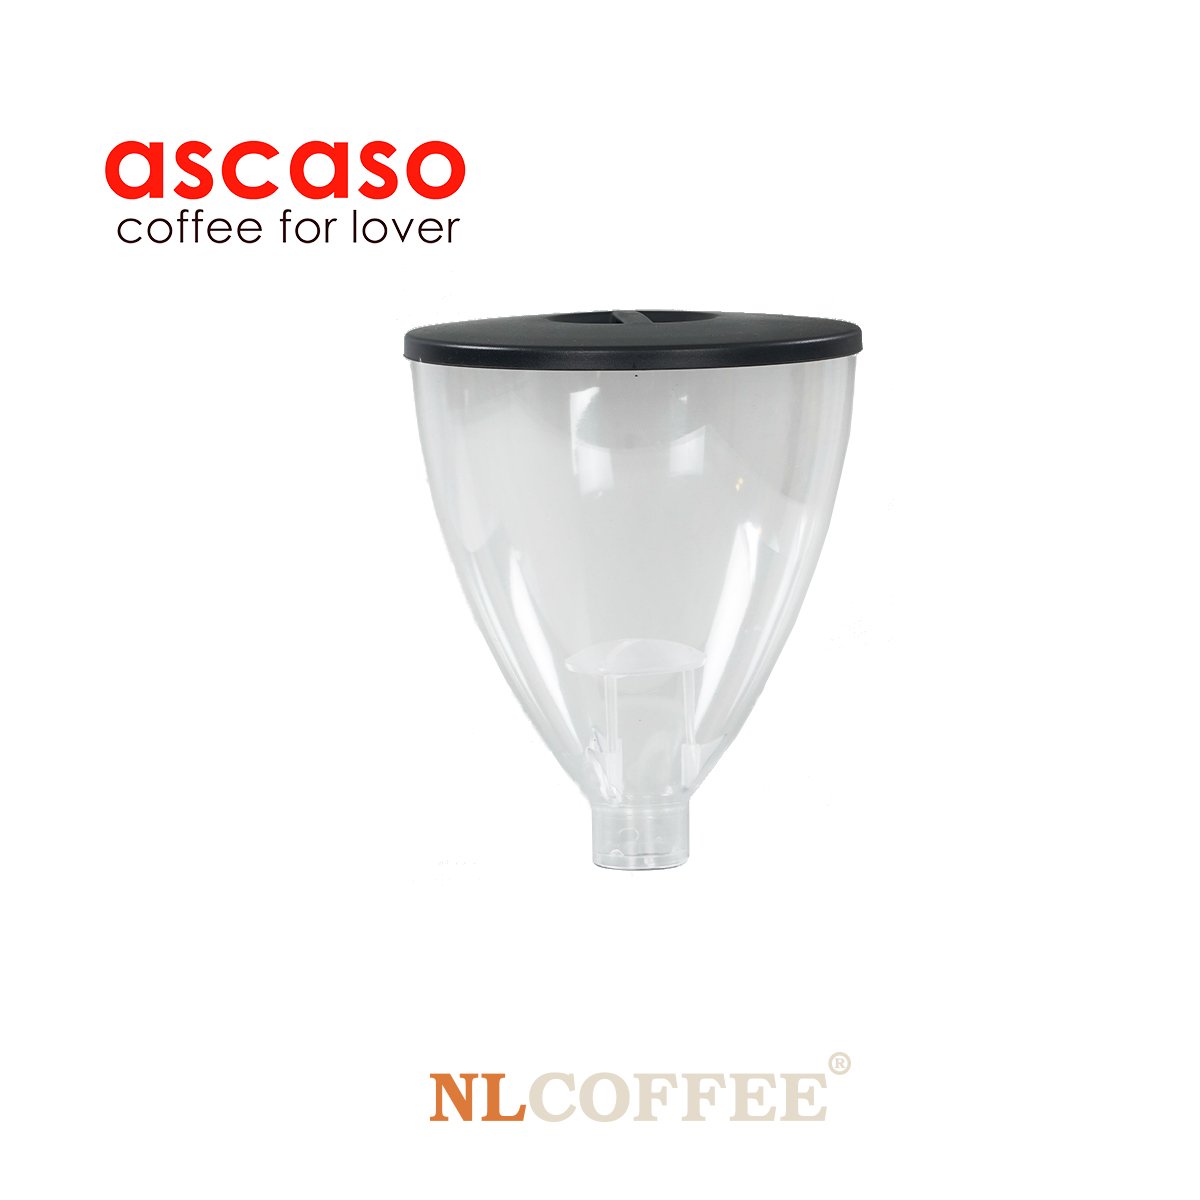 โถเมล็ดกาแฟ Ascaso i1 ขนาด 800 กรัม